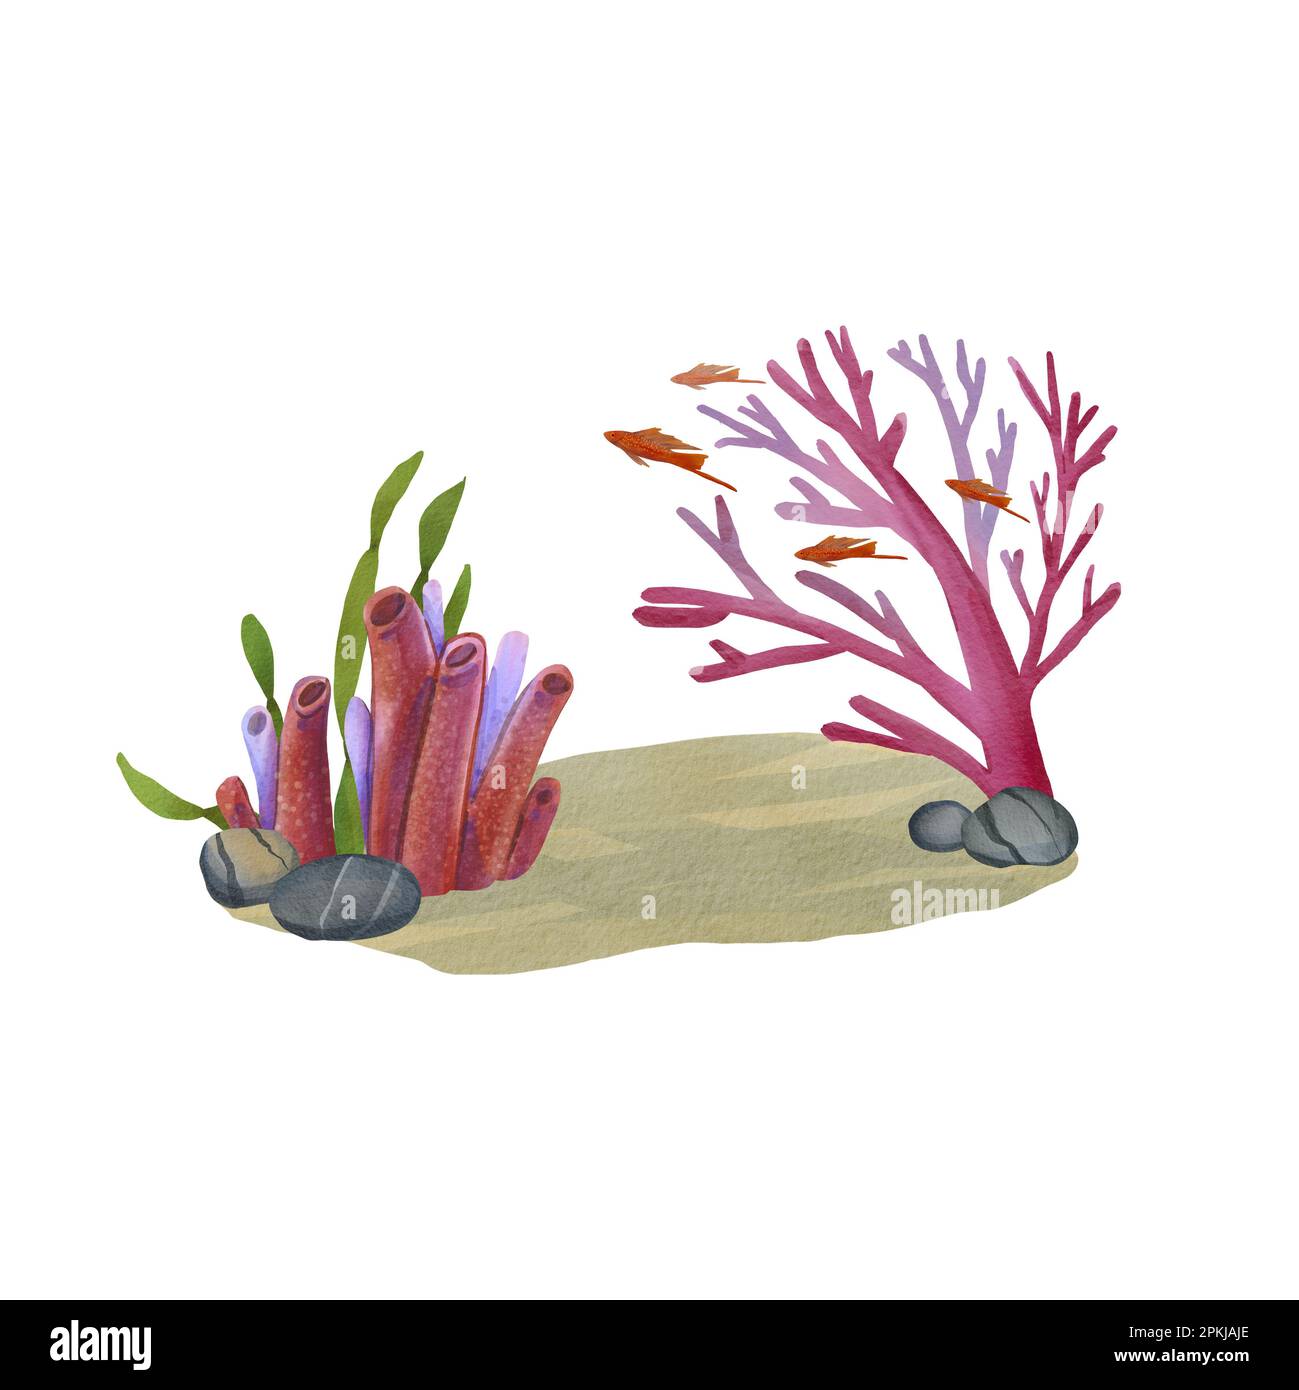 Fondo marino con corales, rocas y algas. Ilustración de acuarela de un arrecife de coral con peces rojos. Acuario de animales exóticos. Arbusto de algas verdes y rosa cora Foto de stock